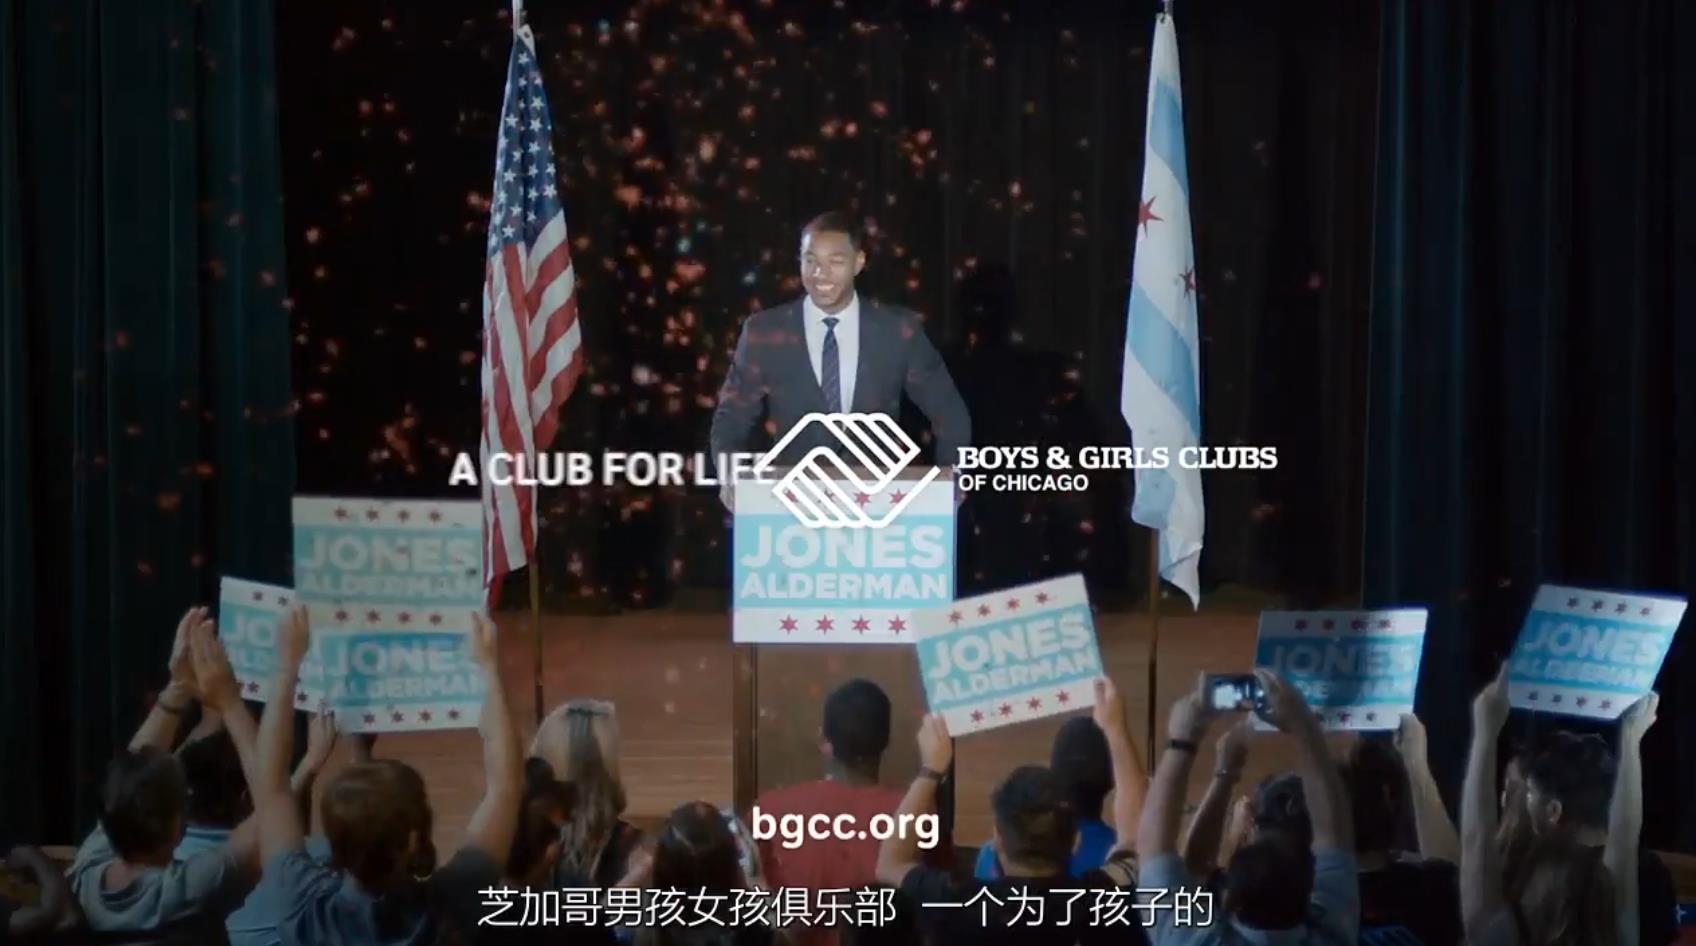 芝加哥Boys & Girls Club广告-中文字幕